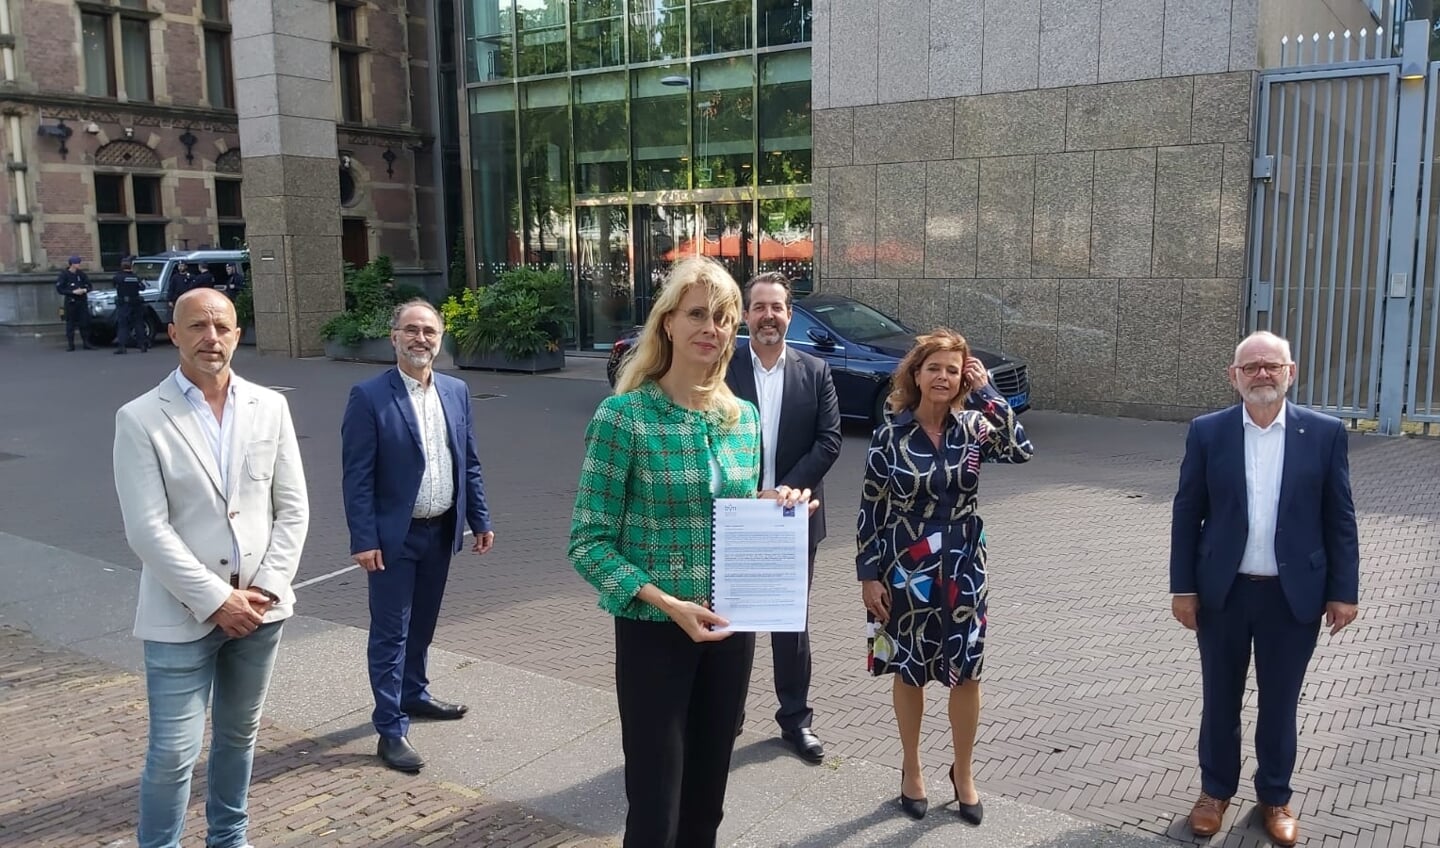 Staatssecretaris Mona Keijzer van economische zaken met de petitie van de touringcarbedrijven.